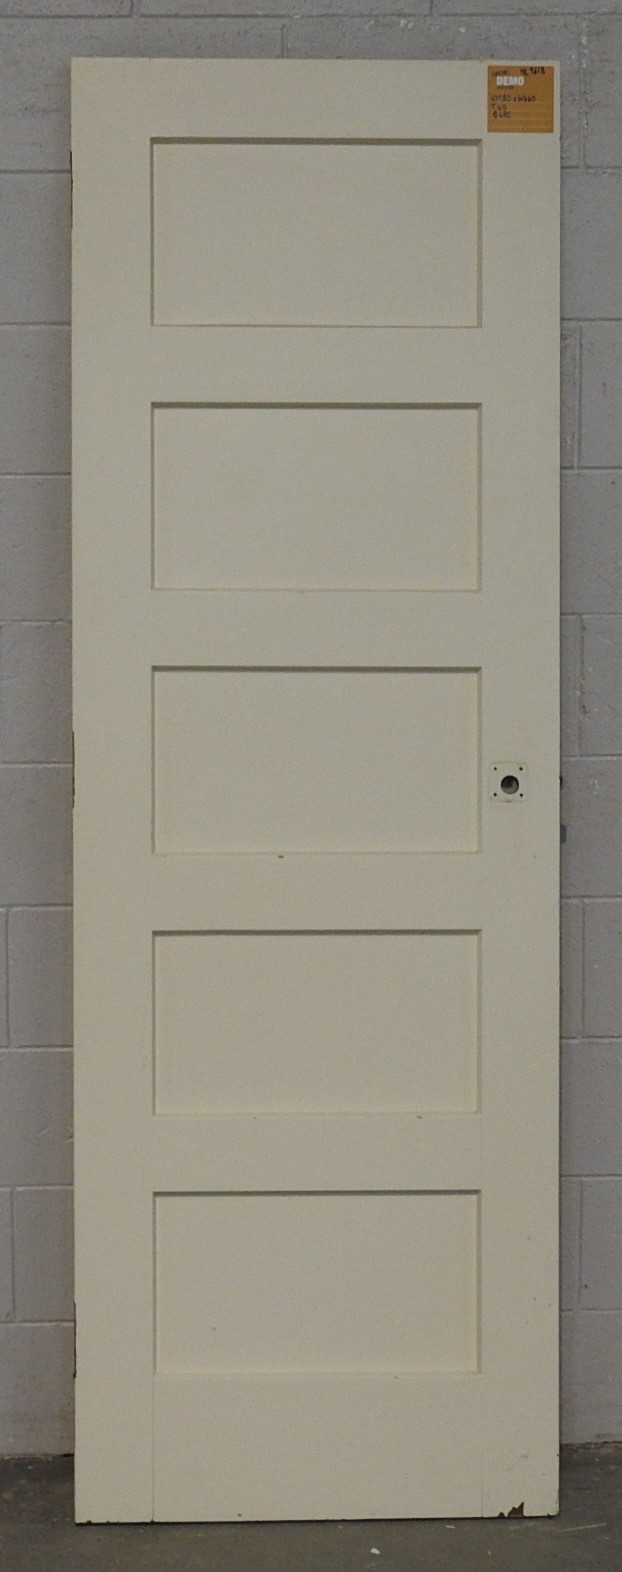 Wooden Bungalow 5 panel cupboard Door - unhung